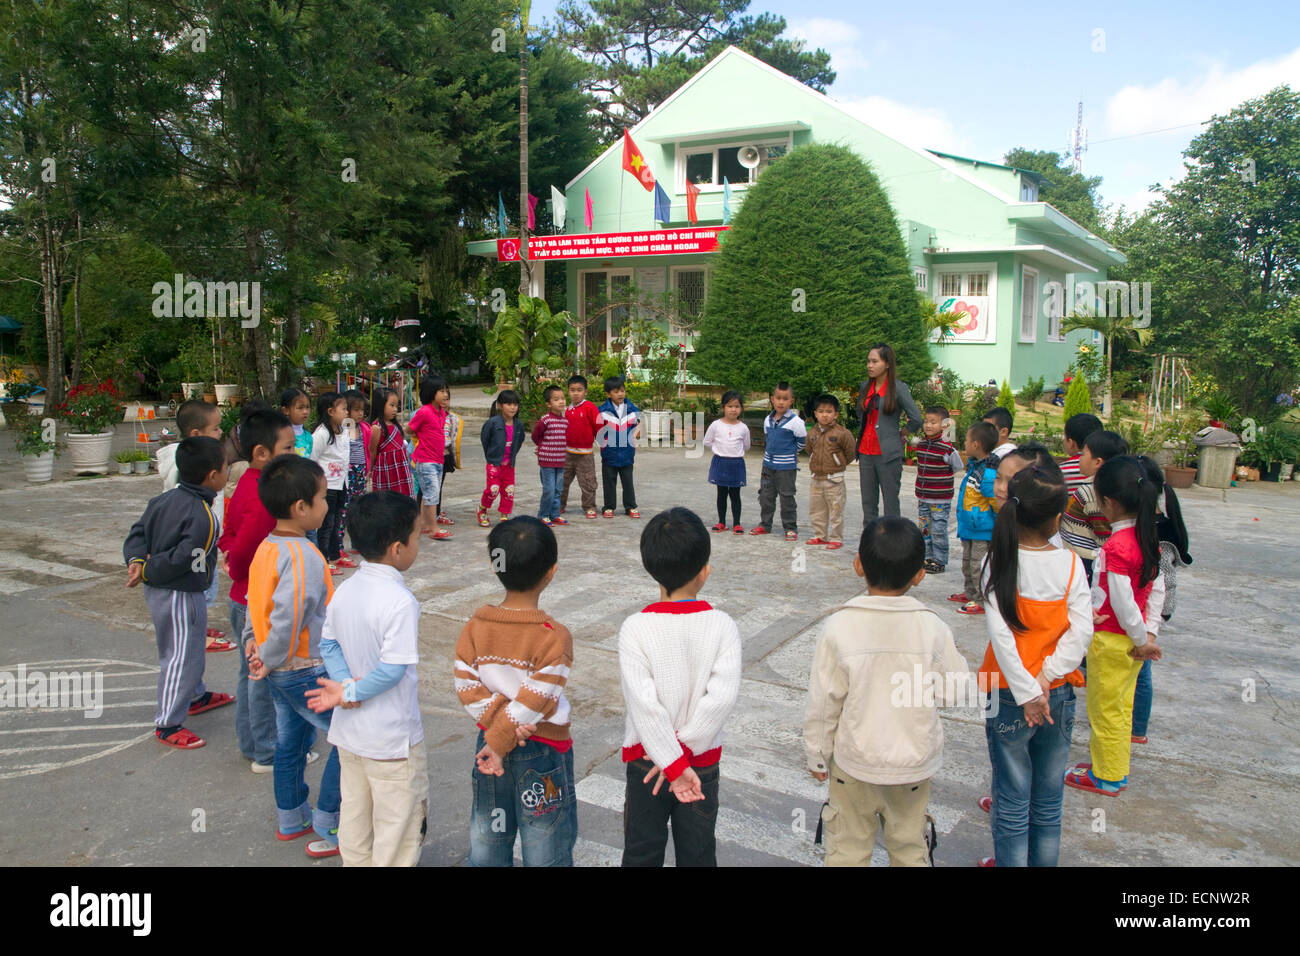 Junge Studenten im Freien an einer Grundschule in Da Lat, Vietnam. Stockfoto